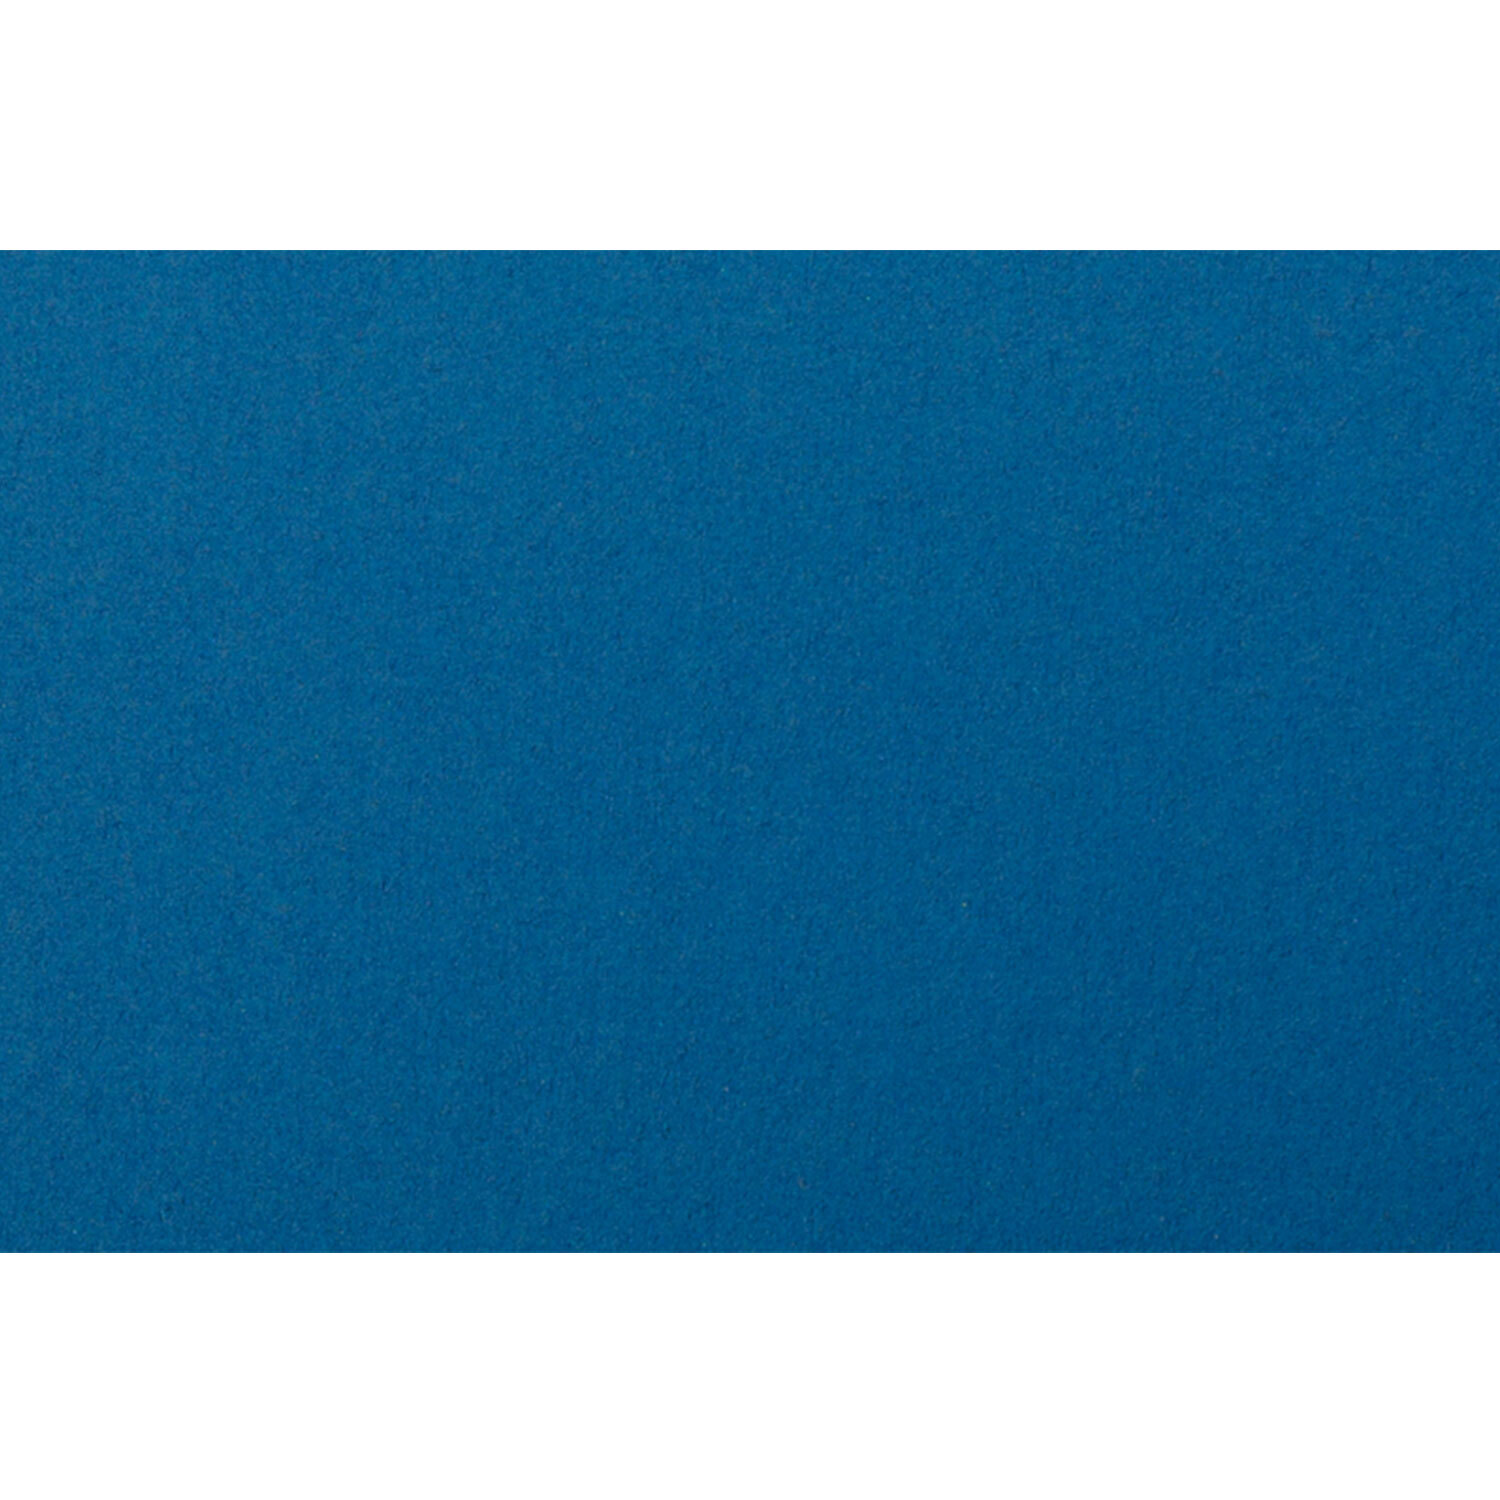 Centura Card - Pearl Royal Blue Image